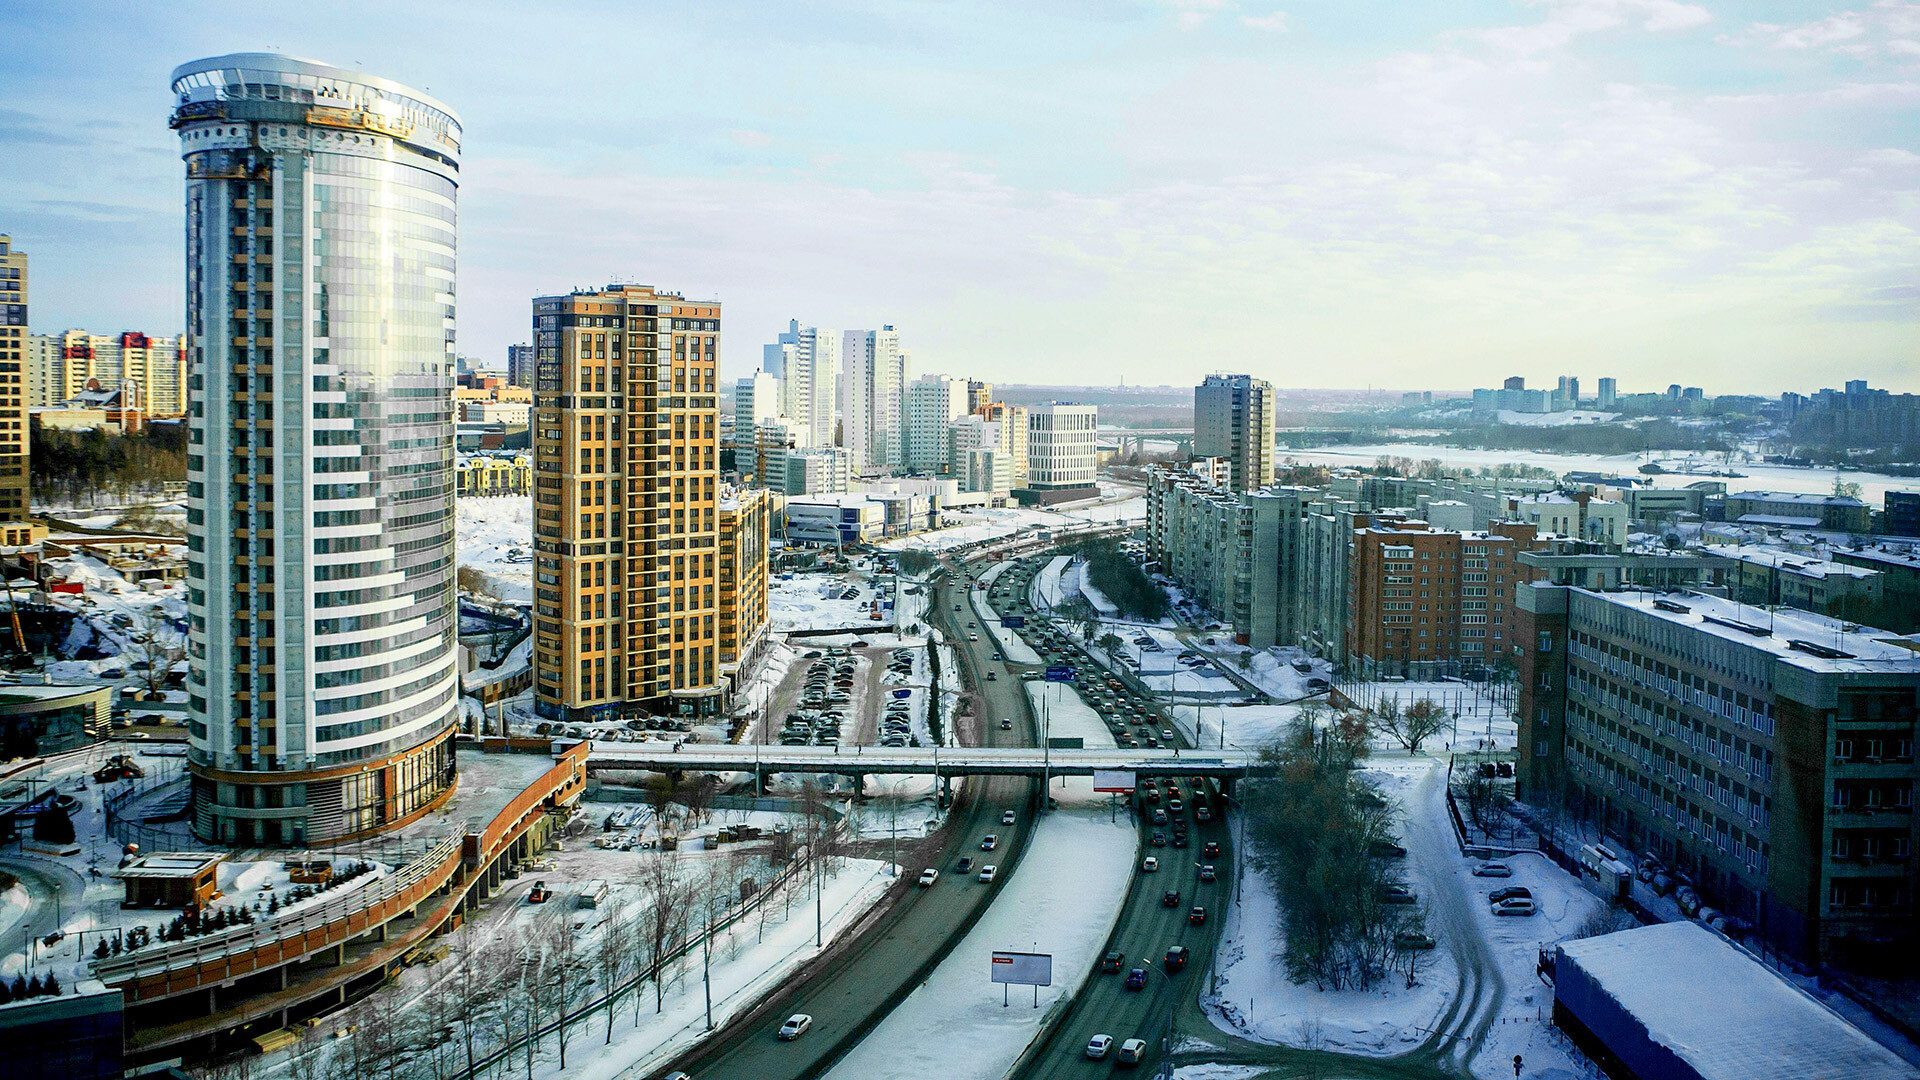 Mestna pokrajina Novosibirska, visoke pisarniške in stanovanjske stavbe ter nebotičniki v mestu, cesta za avtomobile in most za pešce v zimskem času